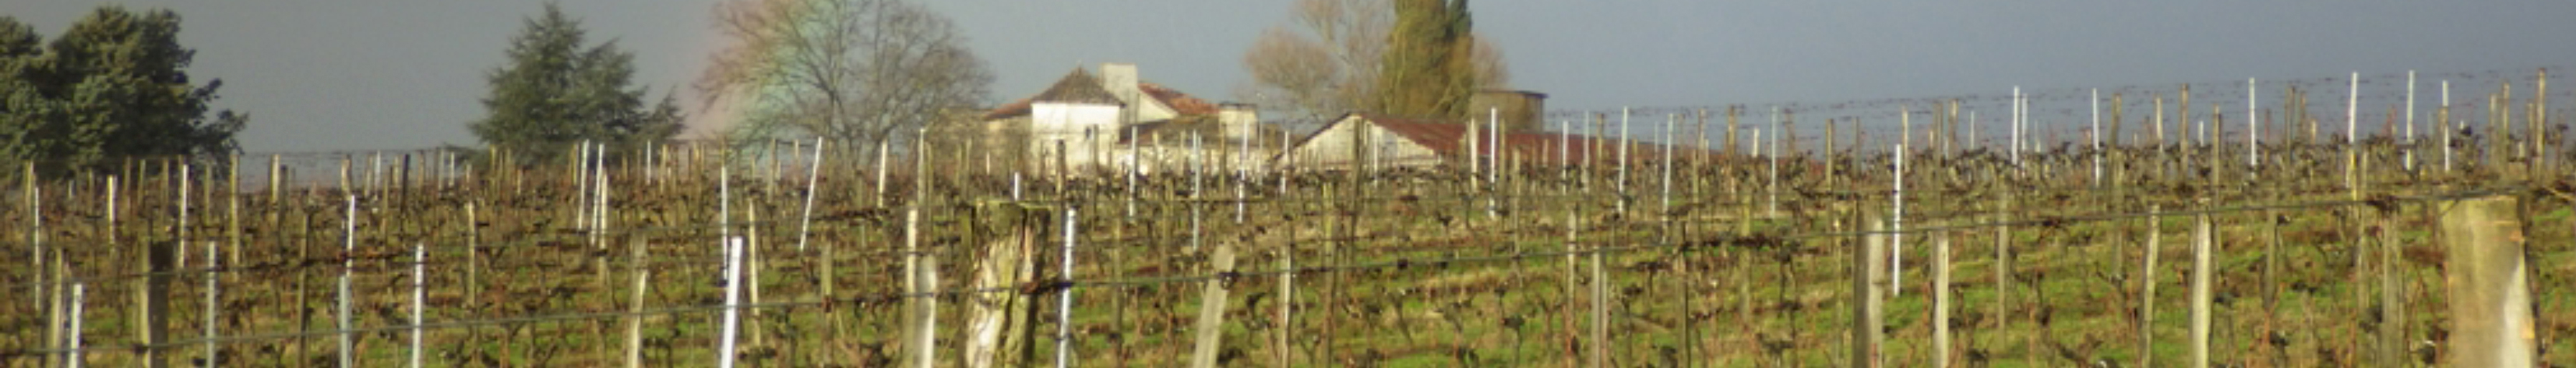 Vines - 2015/216 winter at Château Argadens